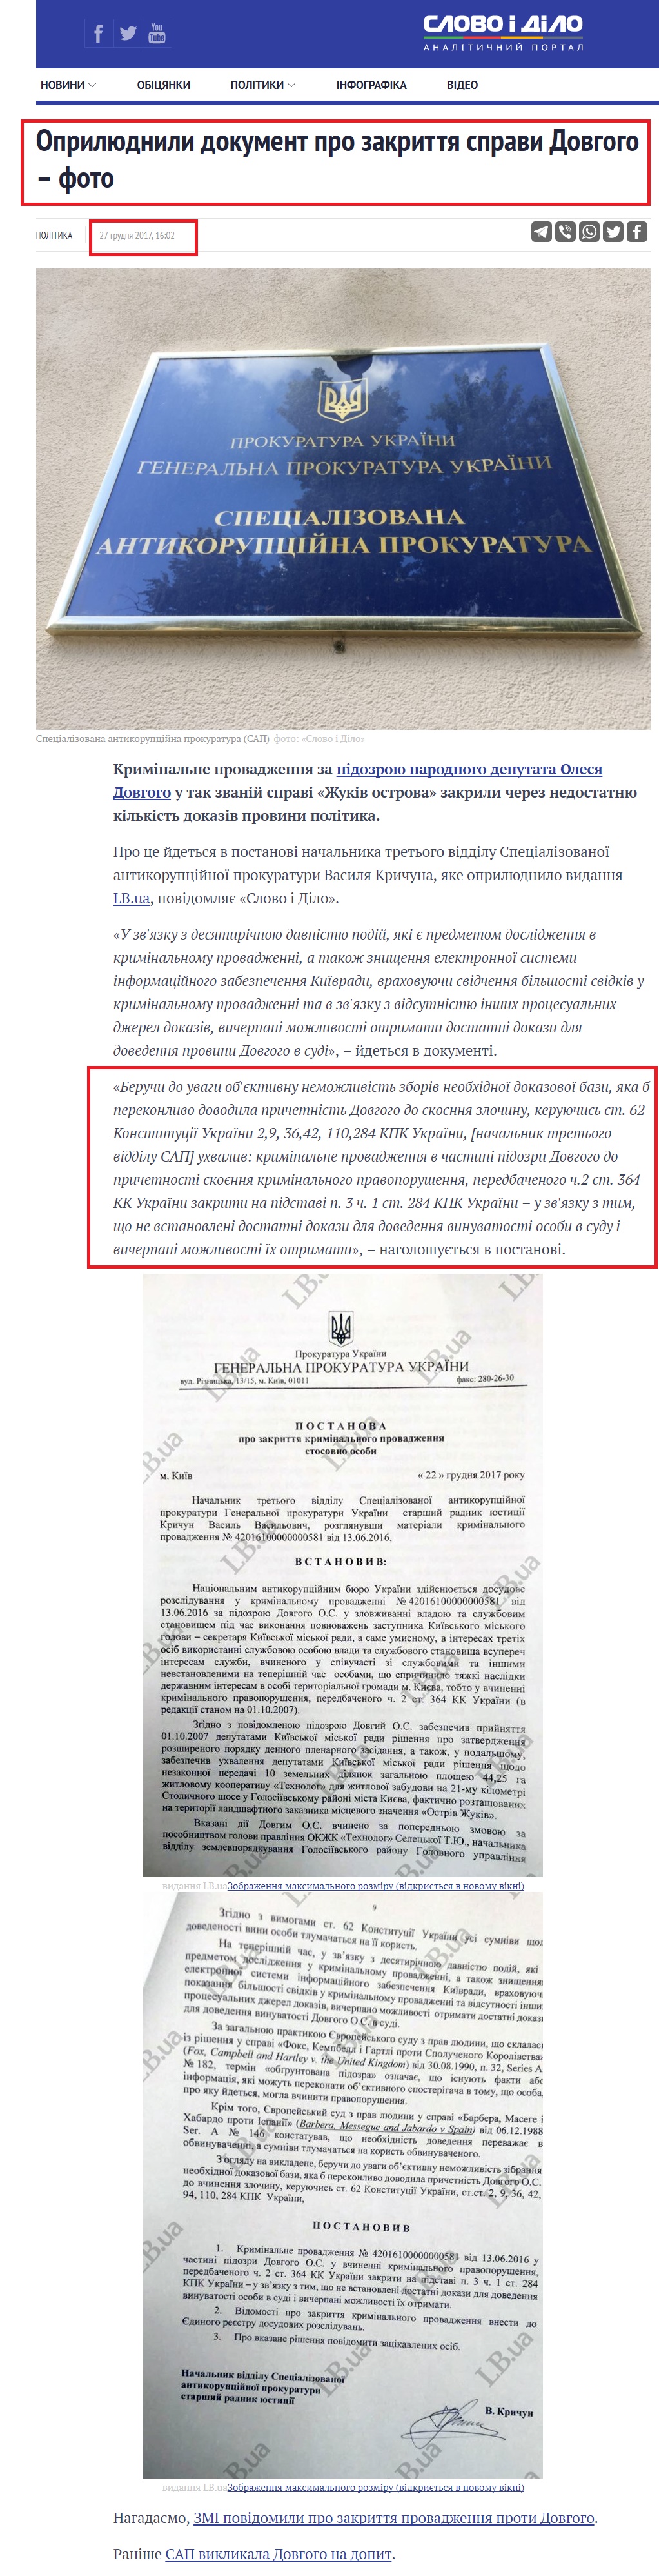 https://www.slovoidilo.ua/2017/12/27/novyna/polityka/oprylyudneno-dokument-pro-zakryttya-spravy-dovhoho-foto